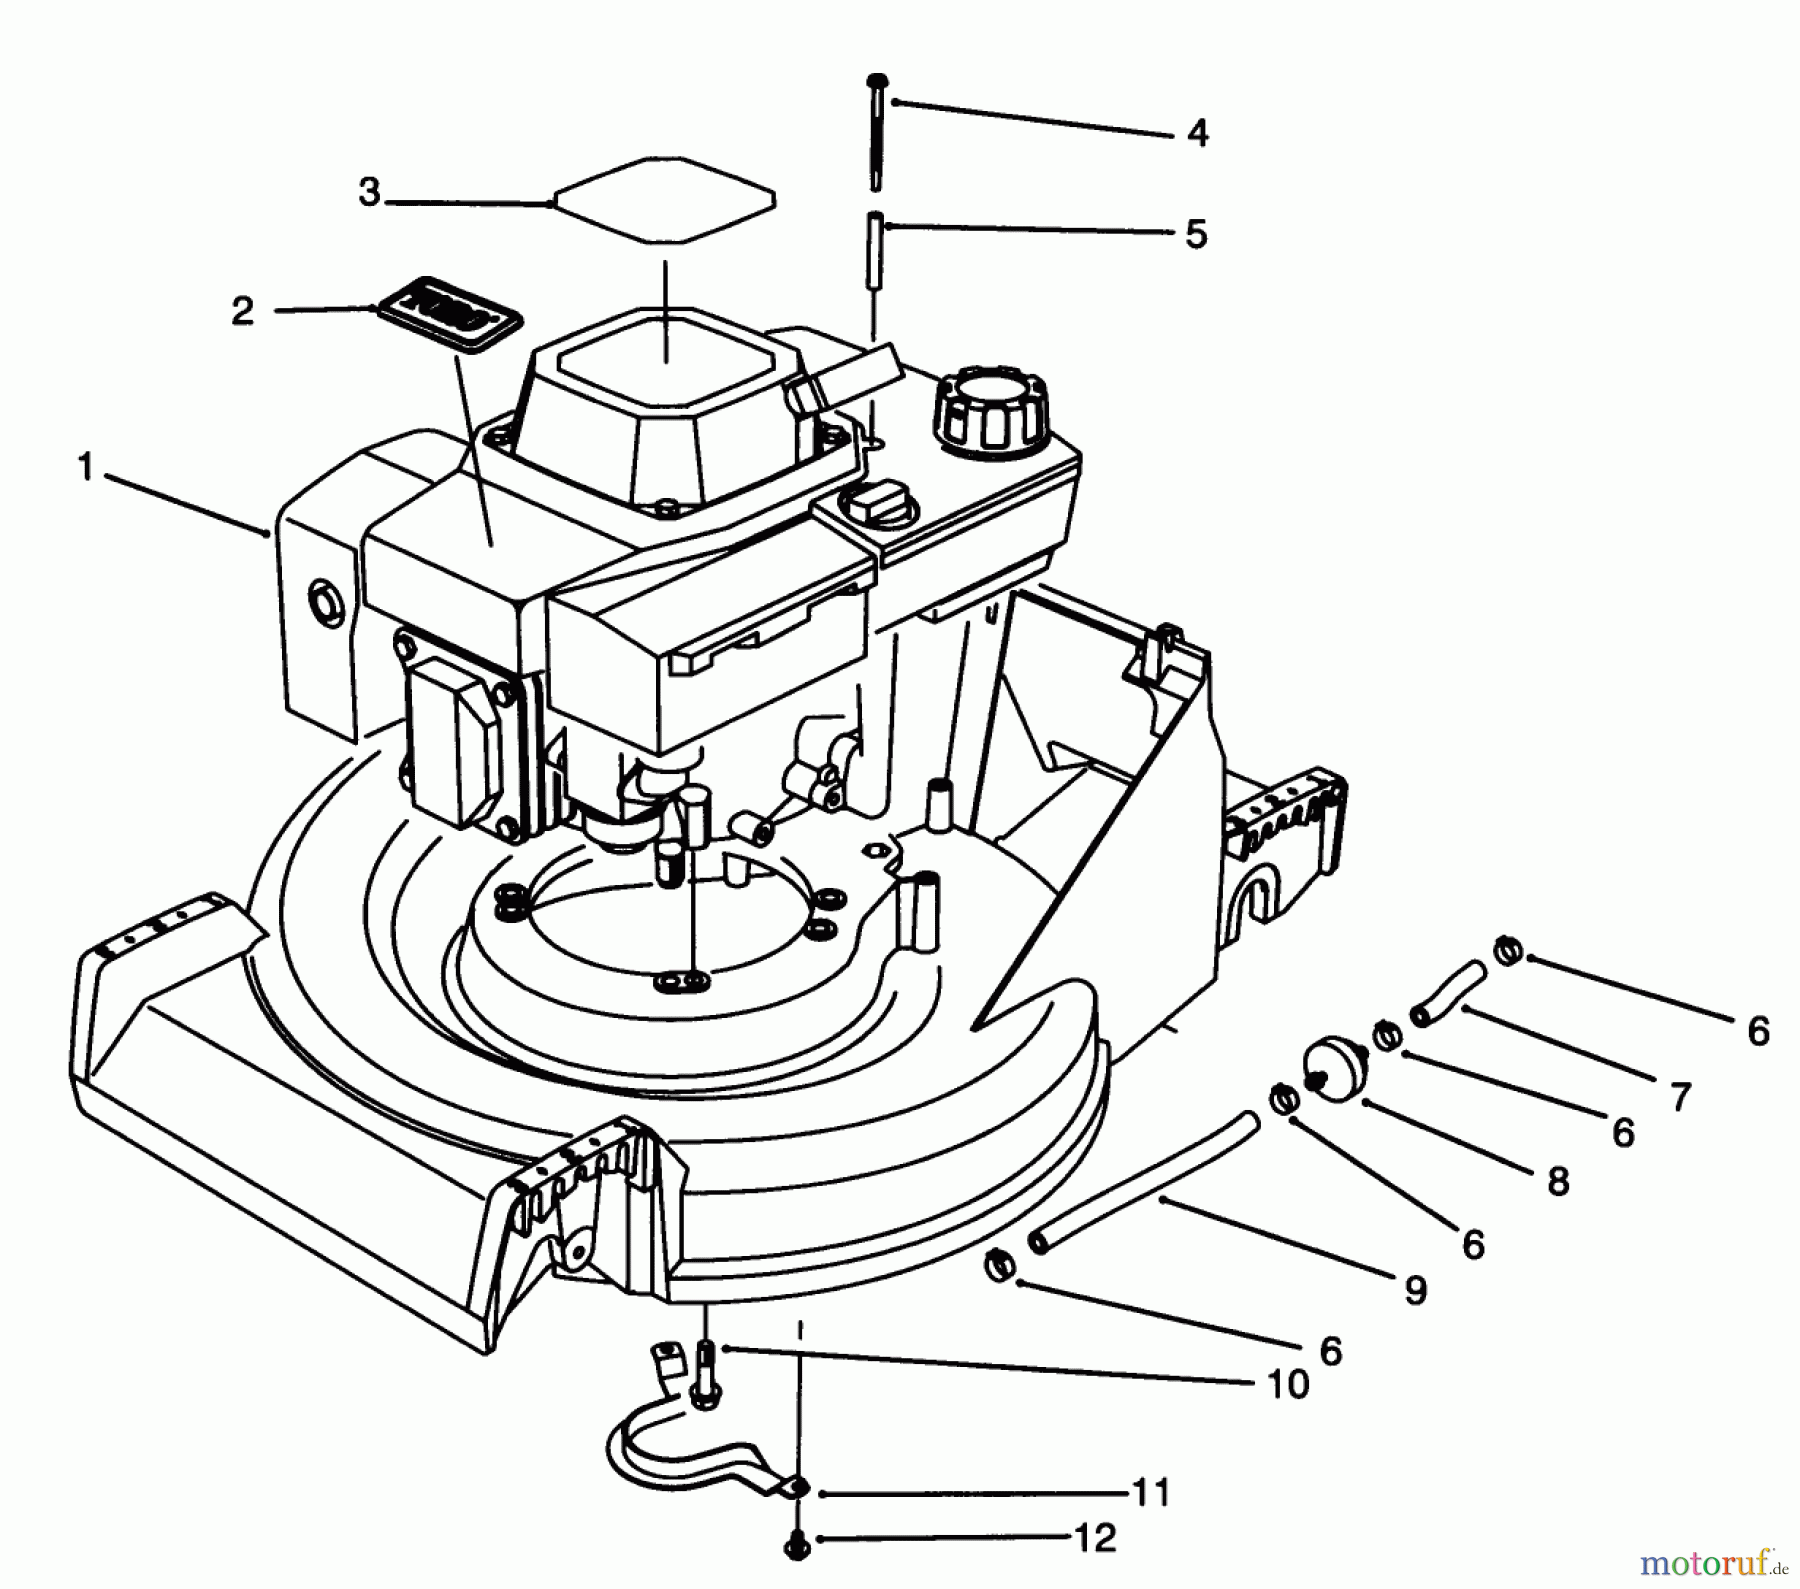  Toro Neu Mowers, Walk-Behind Seite 2 26620B - Toro Lawnmower, 1993 (3900001-3999999) ENGINE ASSEMBLY